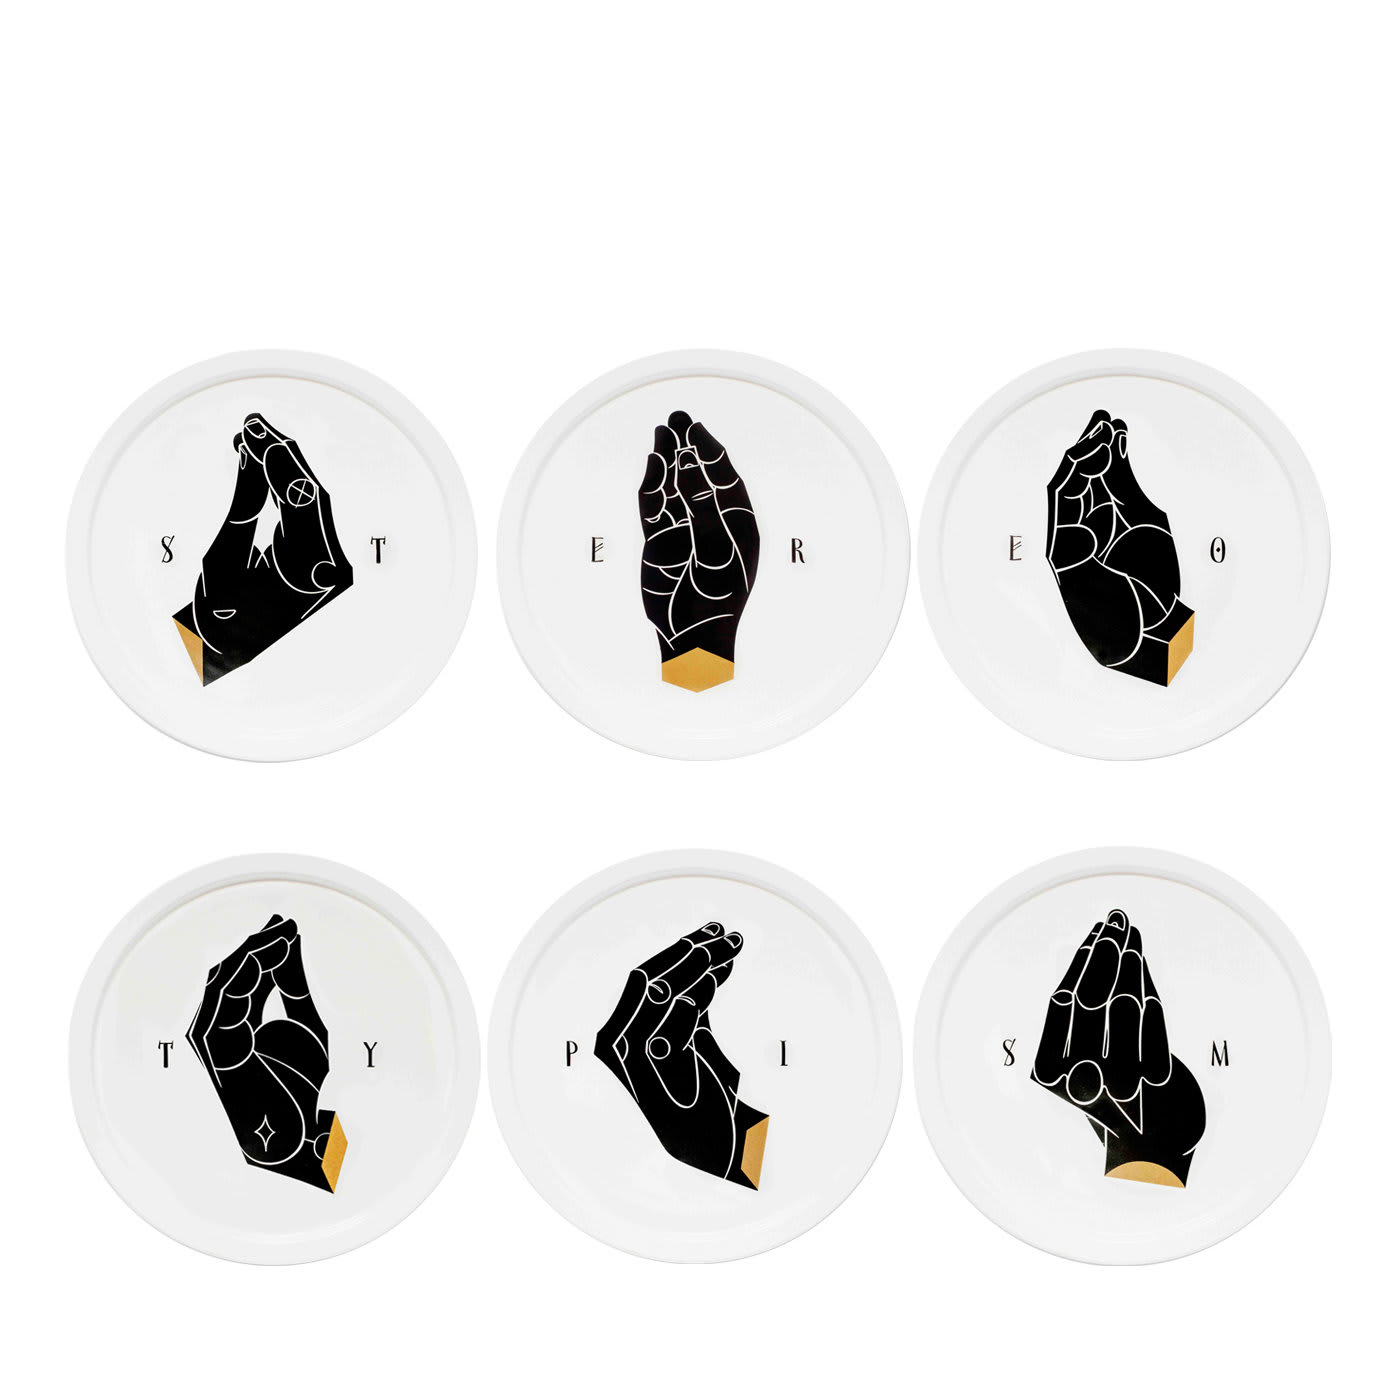 Set of 6 Stereotypism ER Dinner Plates  - Casalinghe di Tokyo